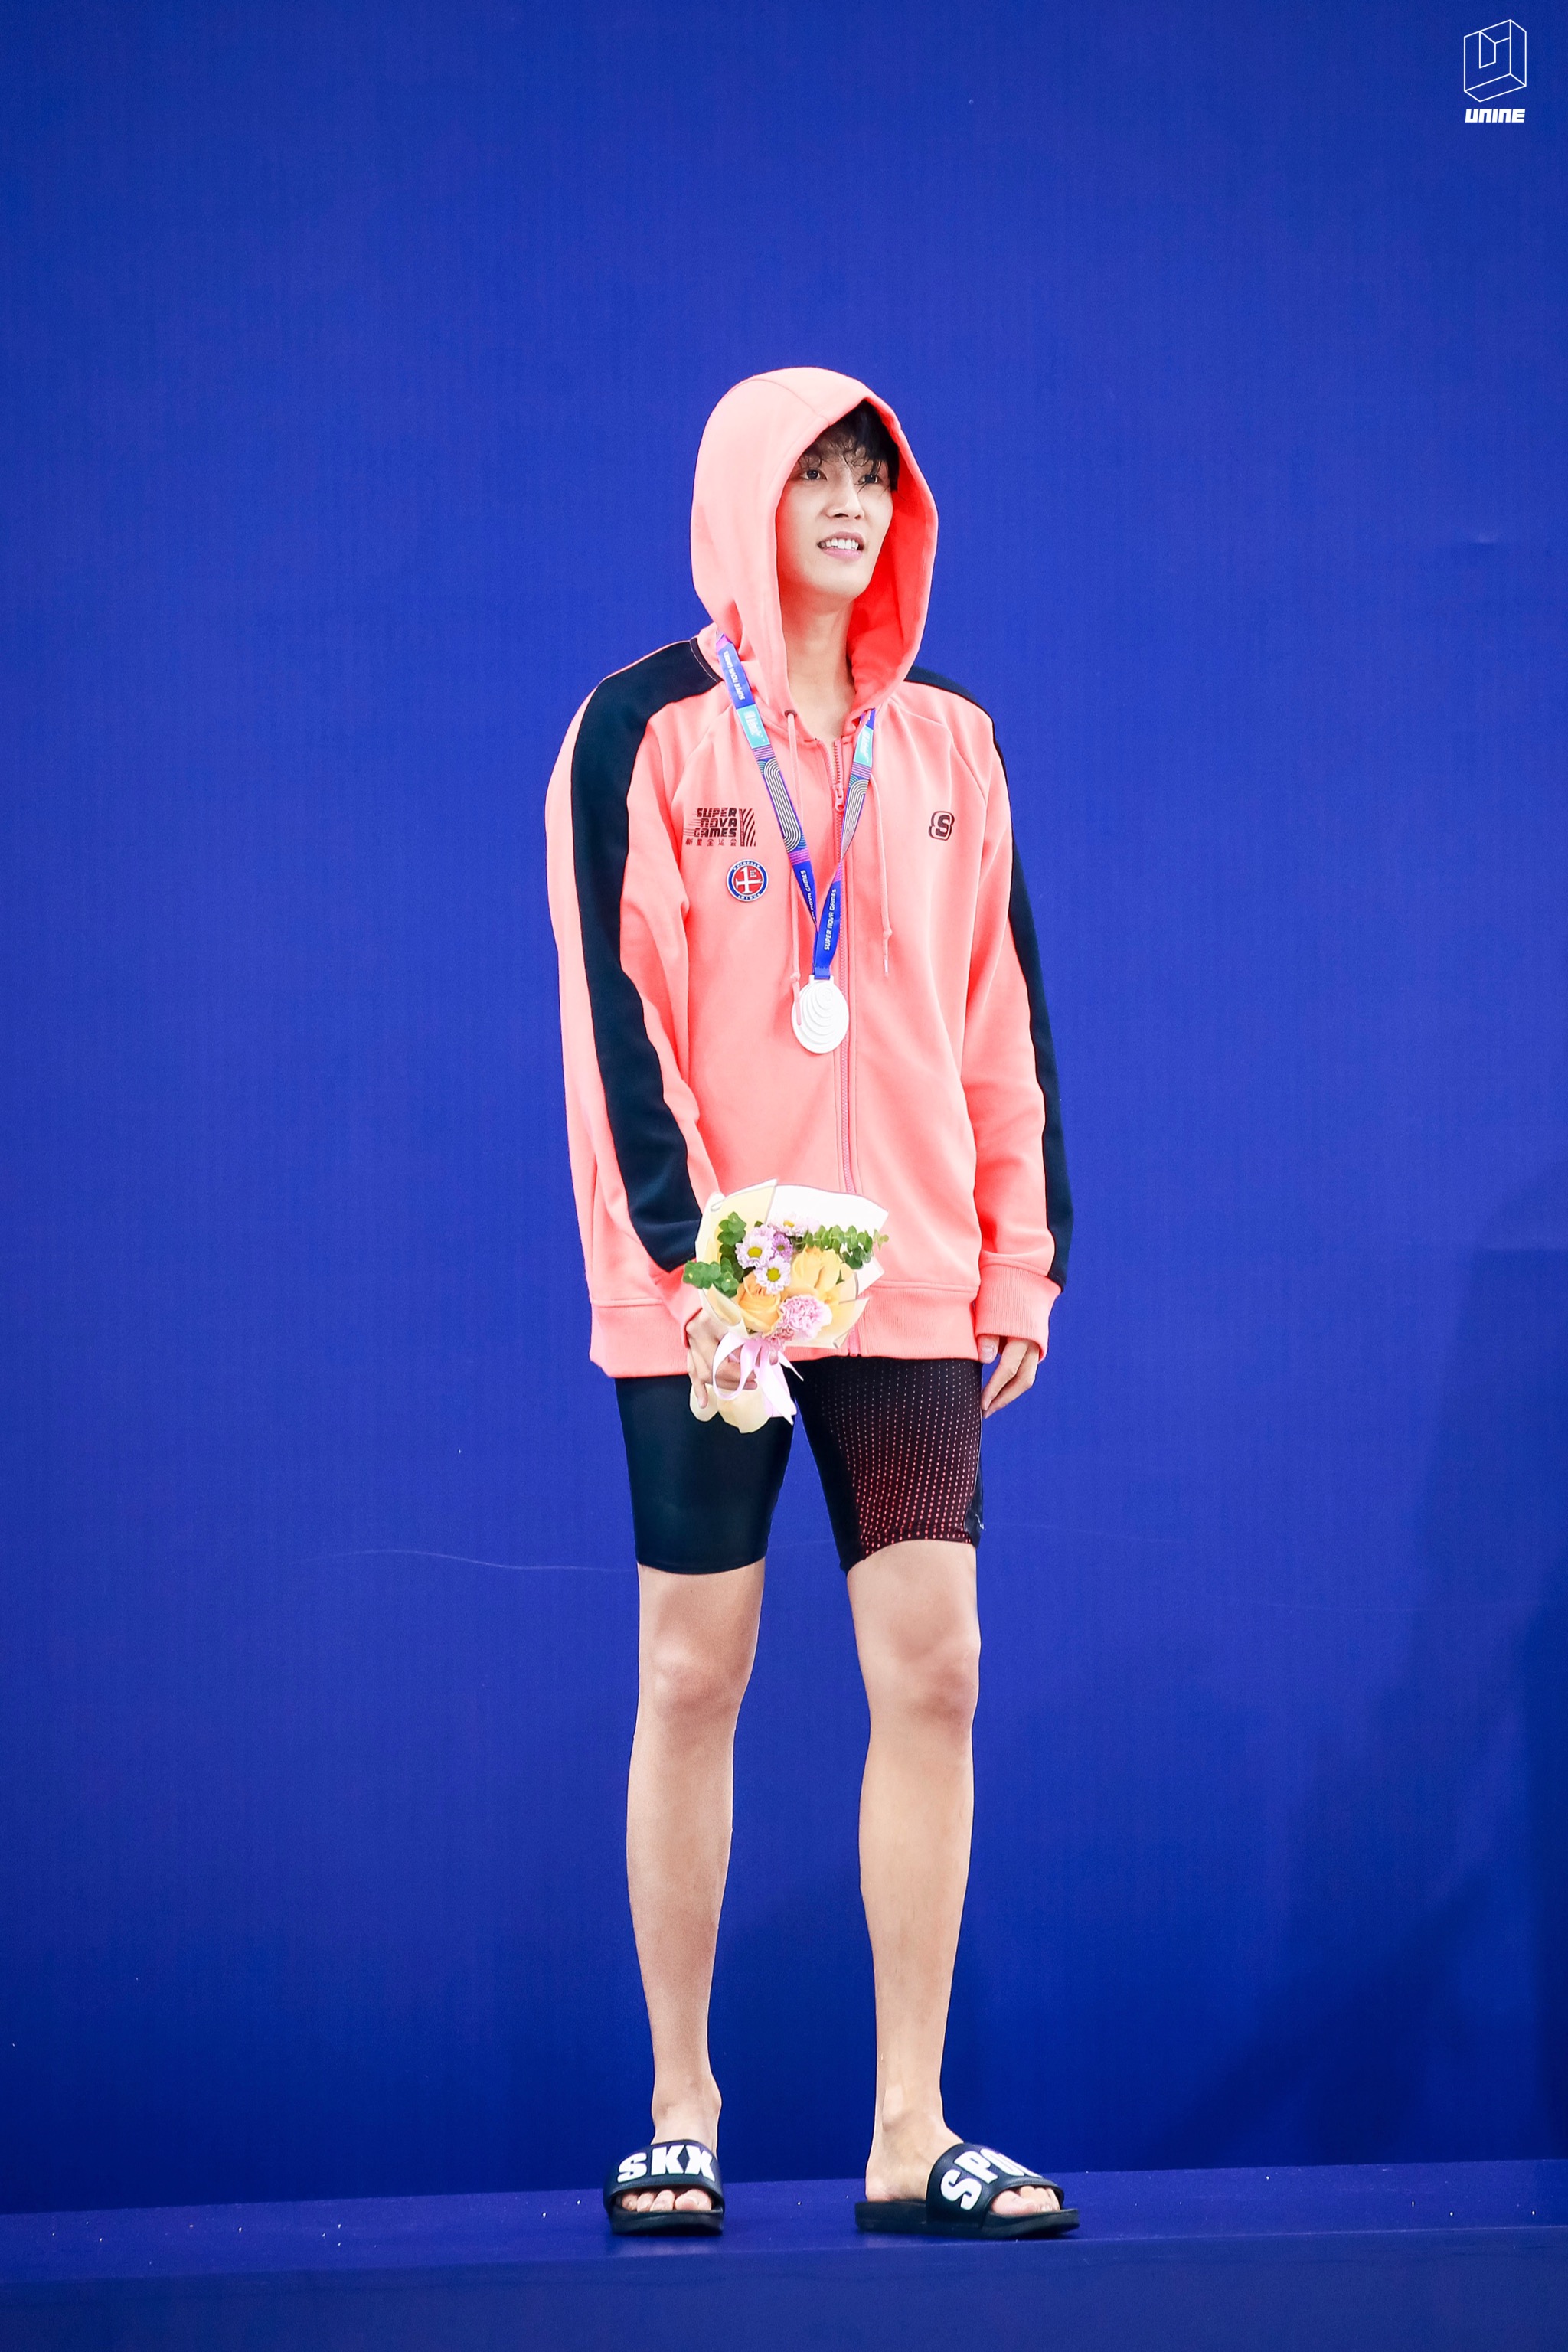 23s的优异成绩破赛会纪录获得《超新星全运会》男子50米游泳亚军并在